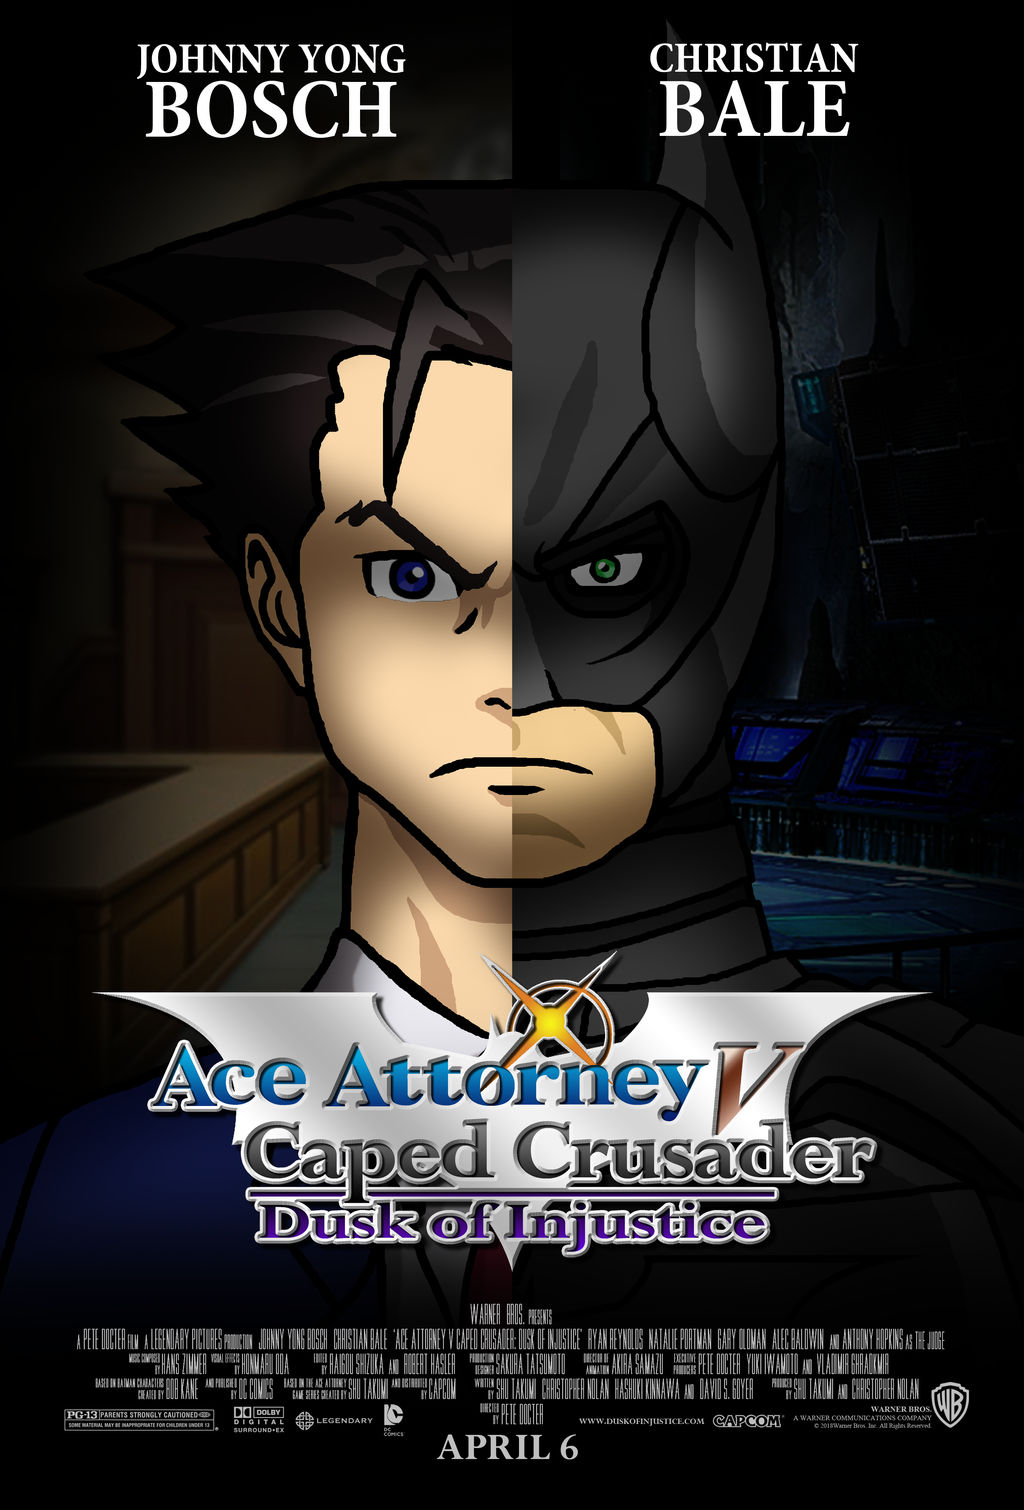 Ace Attorney V Caped Crusader: Dusk of Injustice by Crisostomo-Ibarra on  DeviantArt